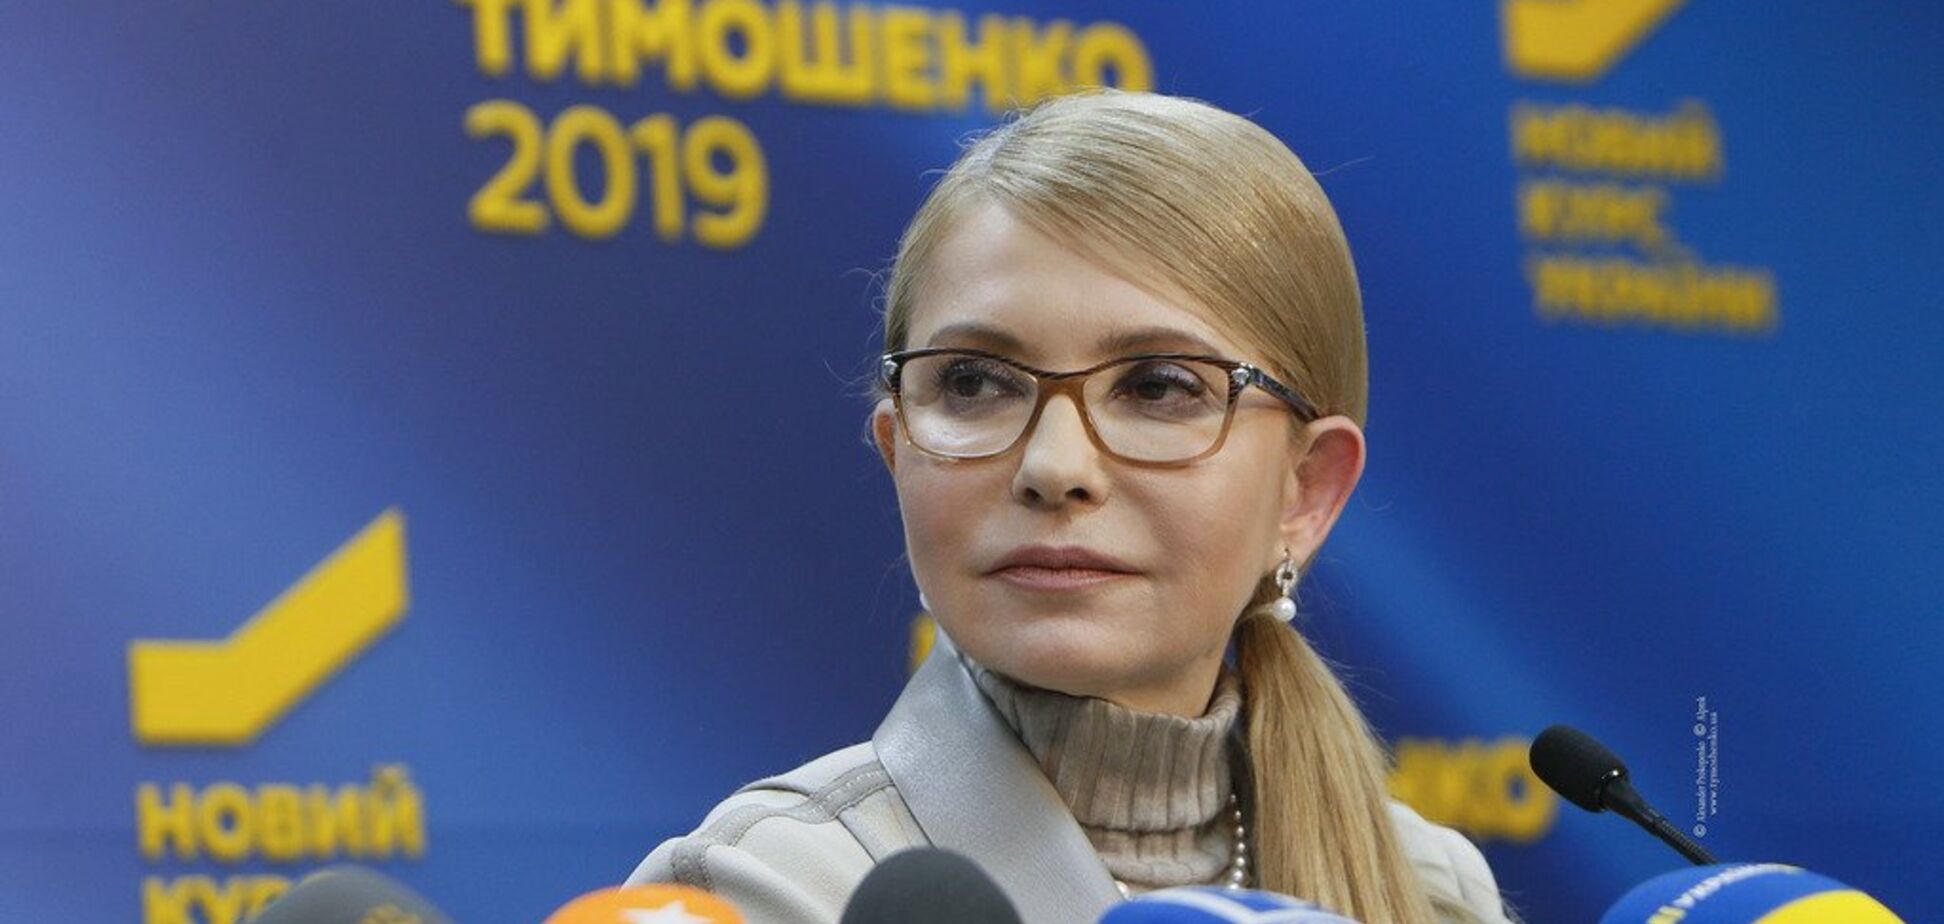 Президентские выборы должны стать дискуссией о будущем Украины и привести к изменениям – Тимошенко